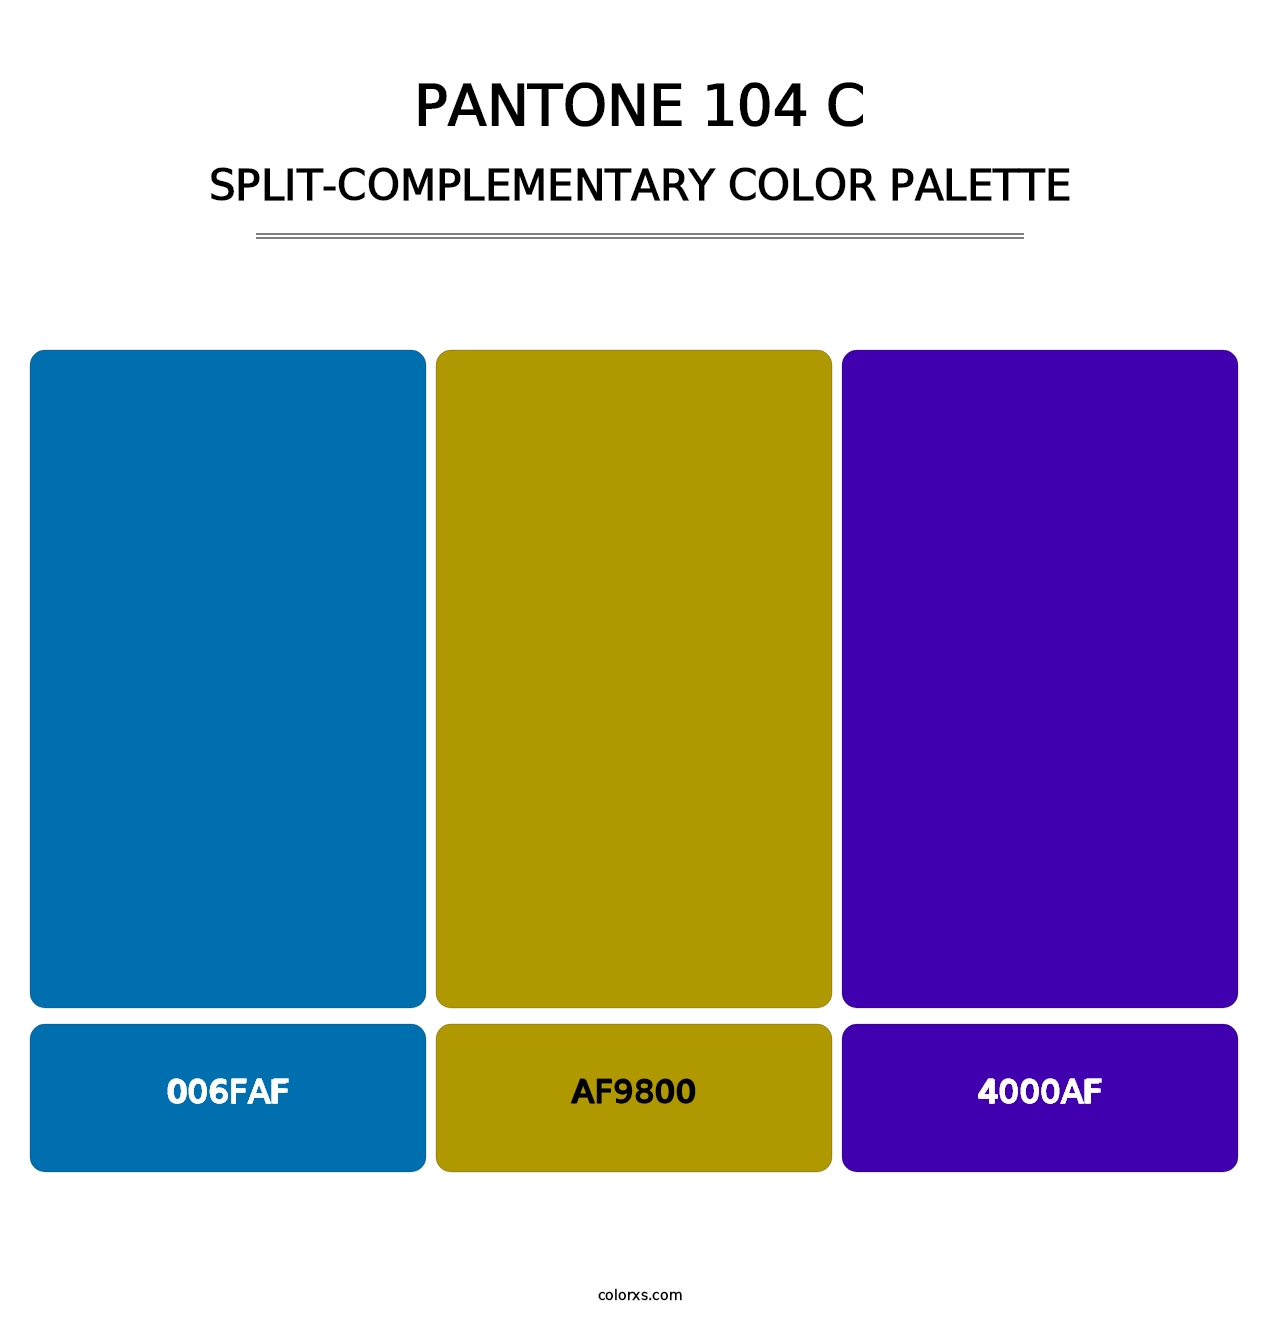 PANTONE 104 C - Split-Complementary Color Palette